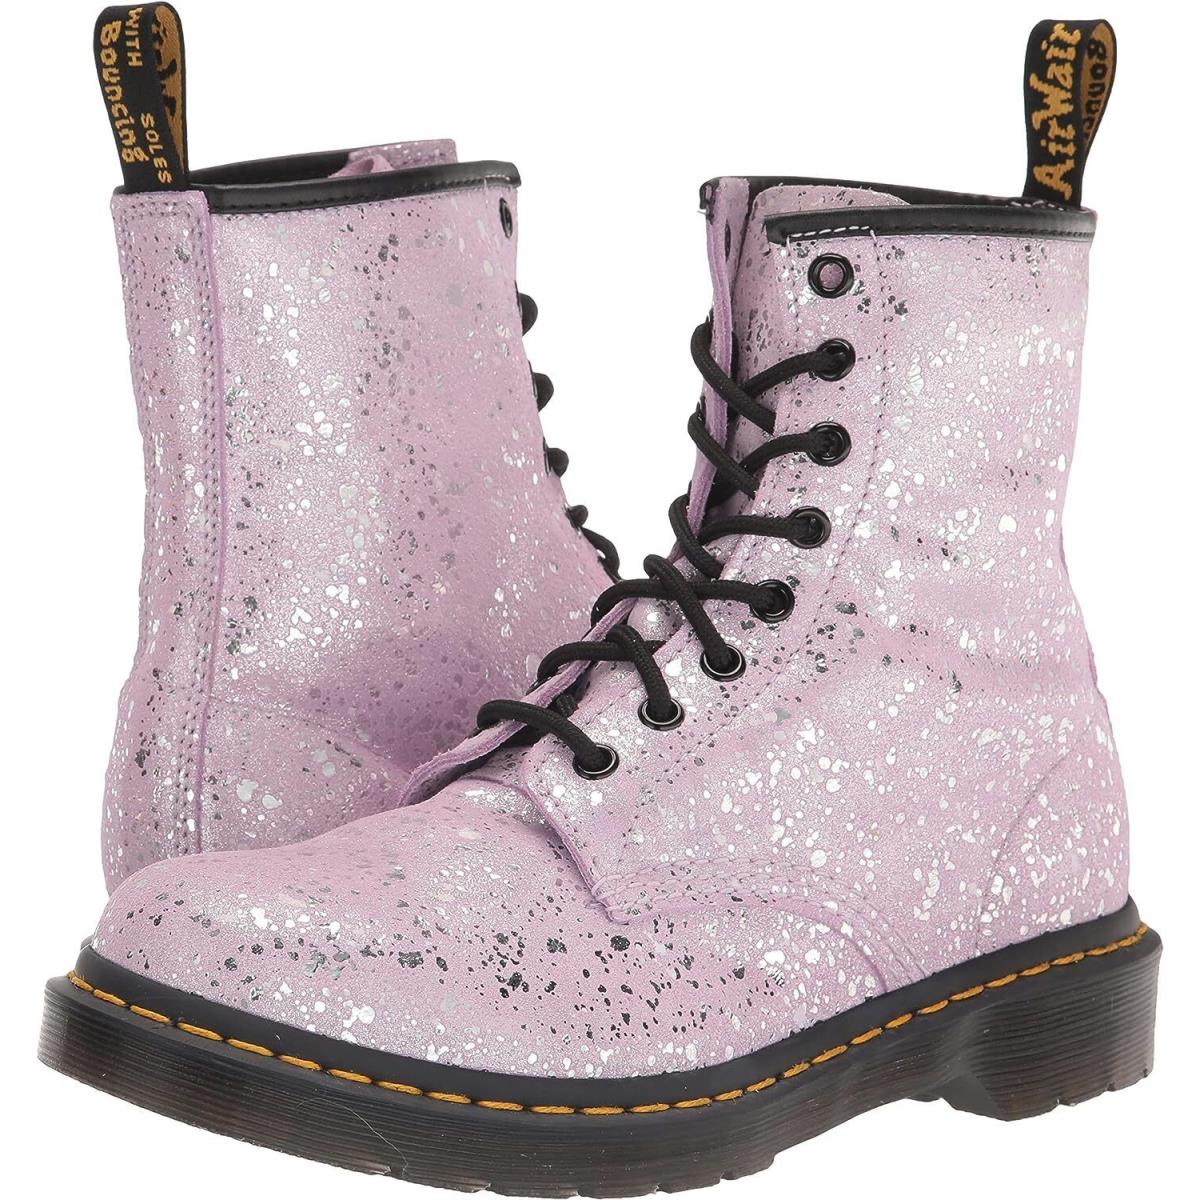 Womens Shoes Dr. Martens 1460 Metallic Paint Splatter Suede Boots 30770308 Lilac - Purple